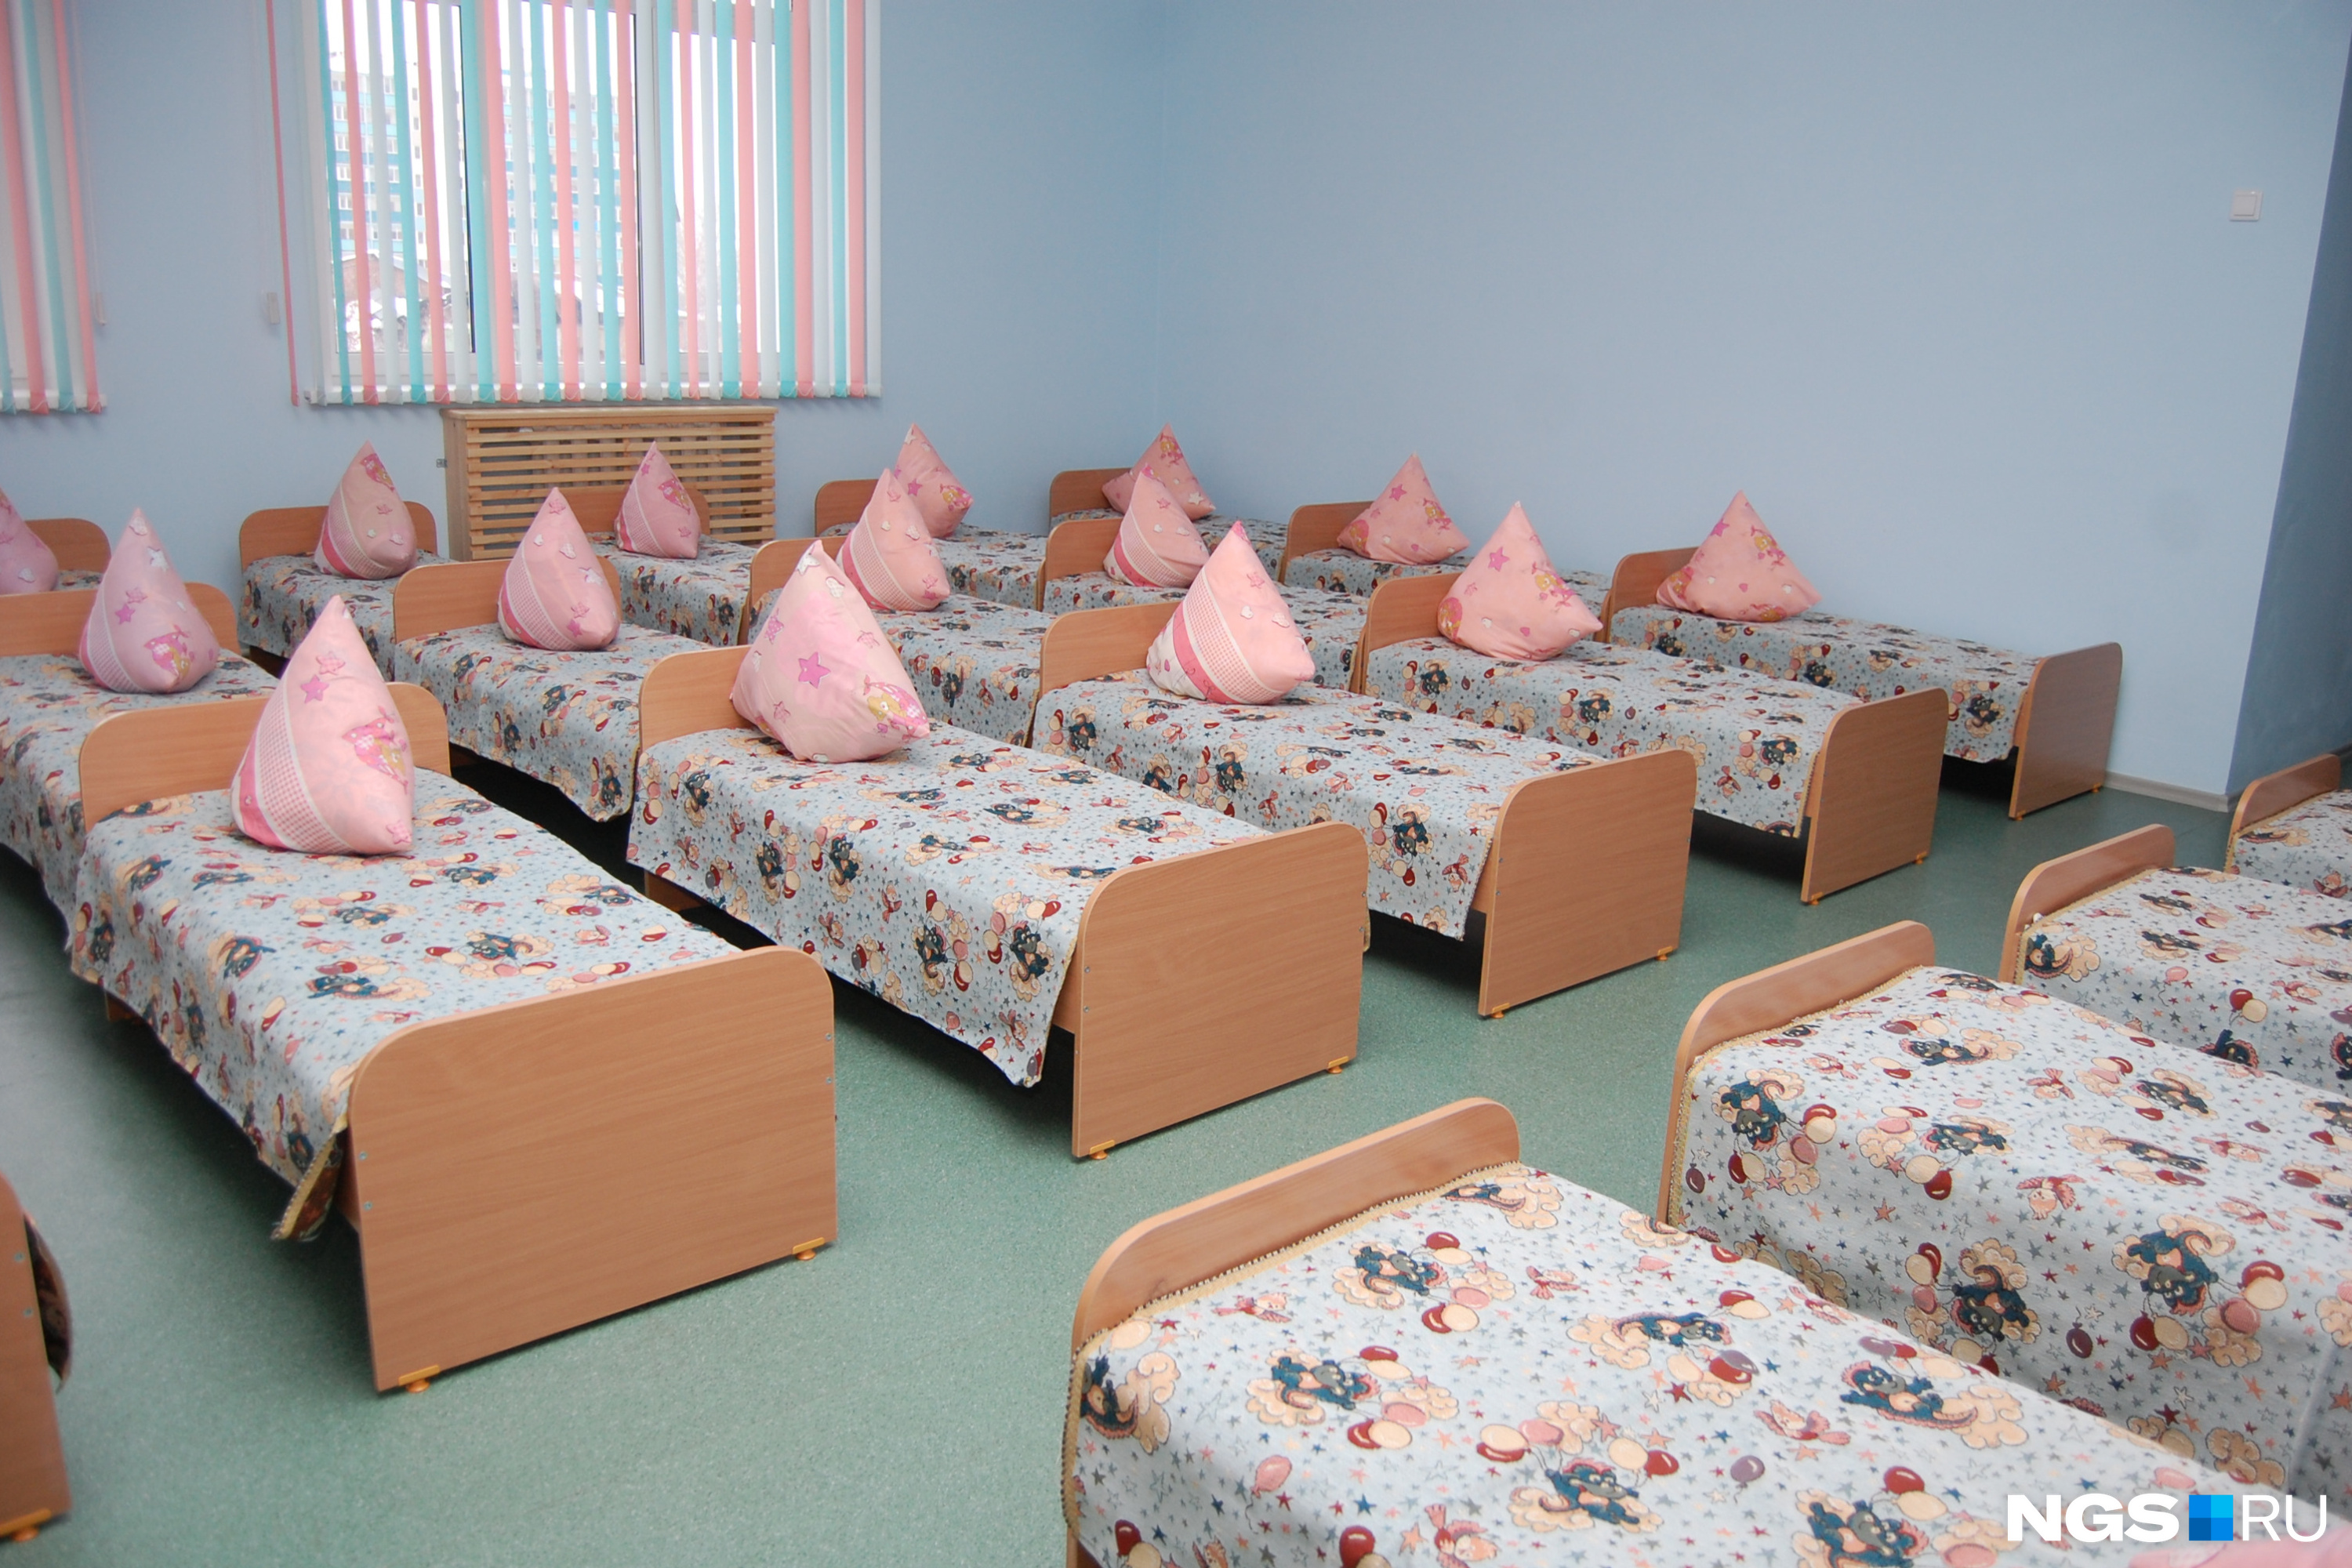 Детский сад в Новосибирске попал под проверку из-за видео издевательств над воспитанниками